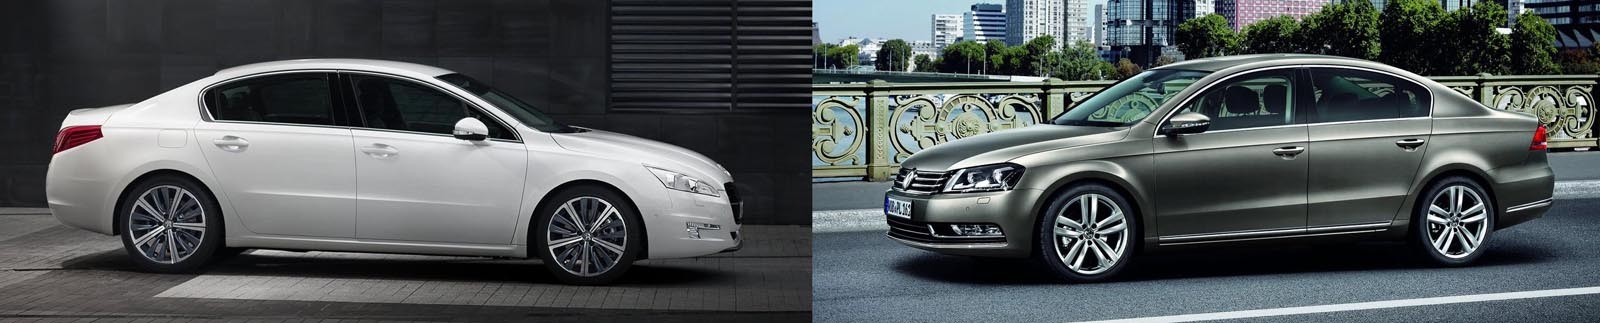 Peugeot 508 vs. Volkswagen Passat facelift